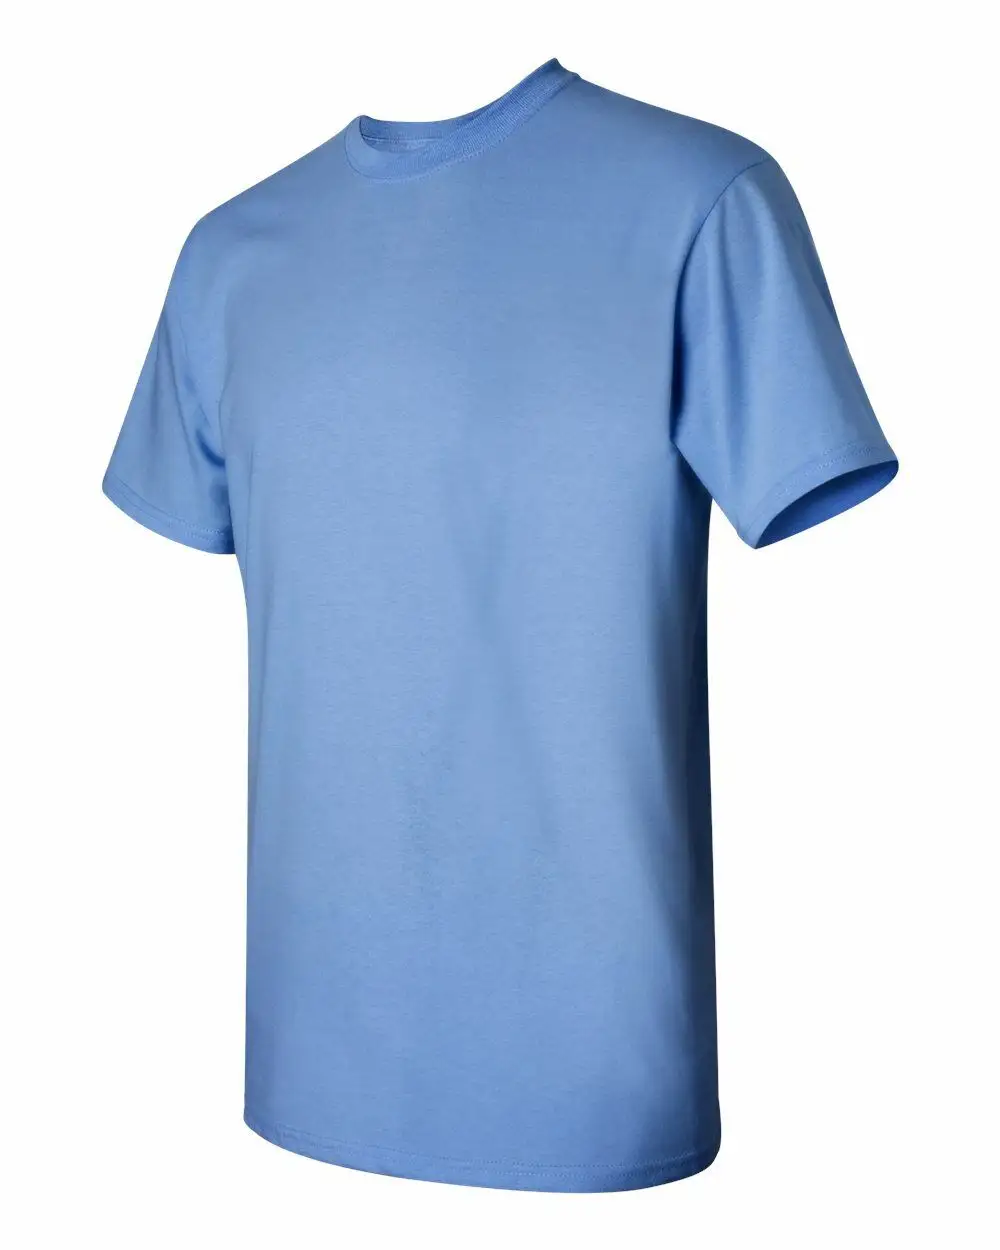 Fabricant pas cher 100% coton tshirt vêtements personnalisés hommes tee shirt impression logo surdimensionné grande taille t-shirts